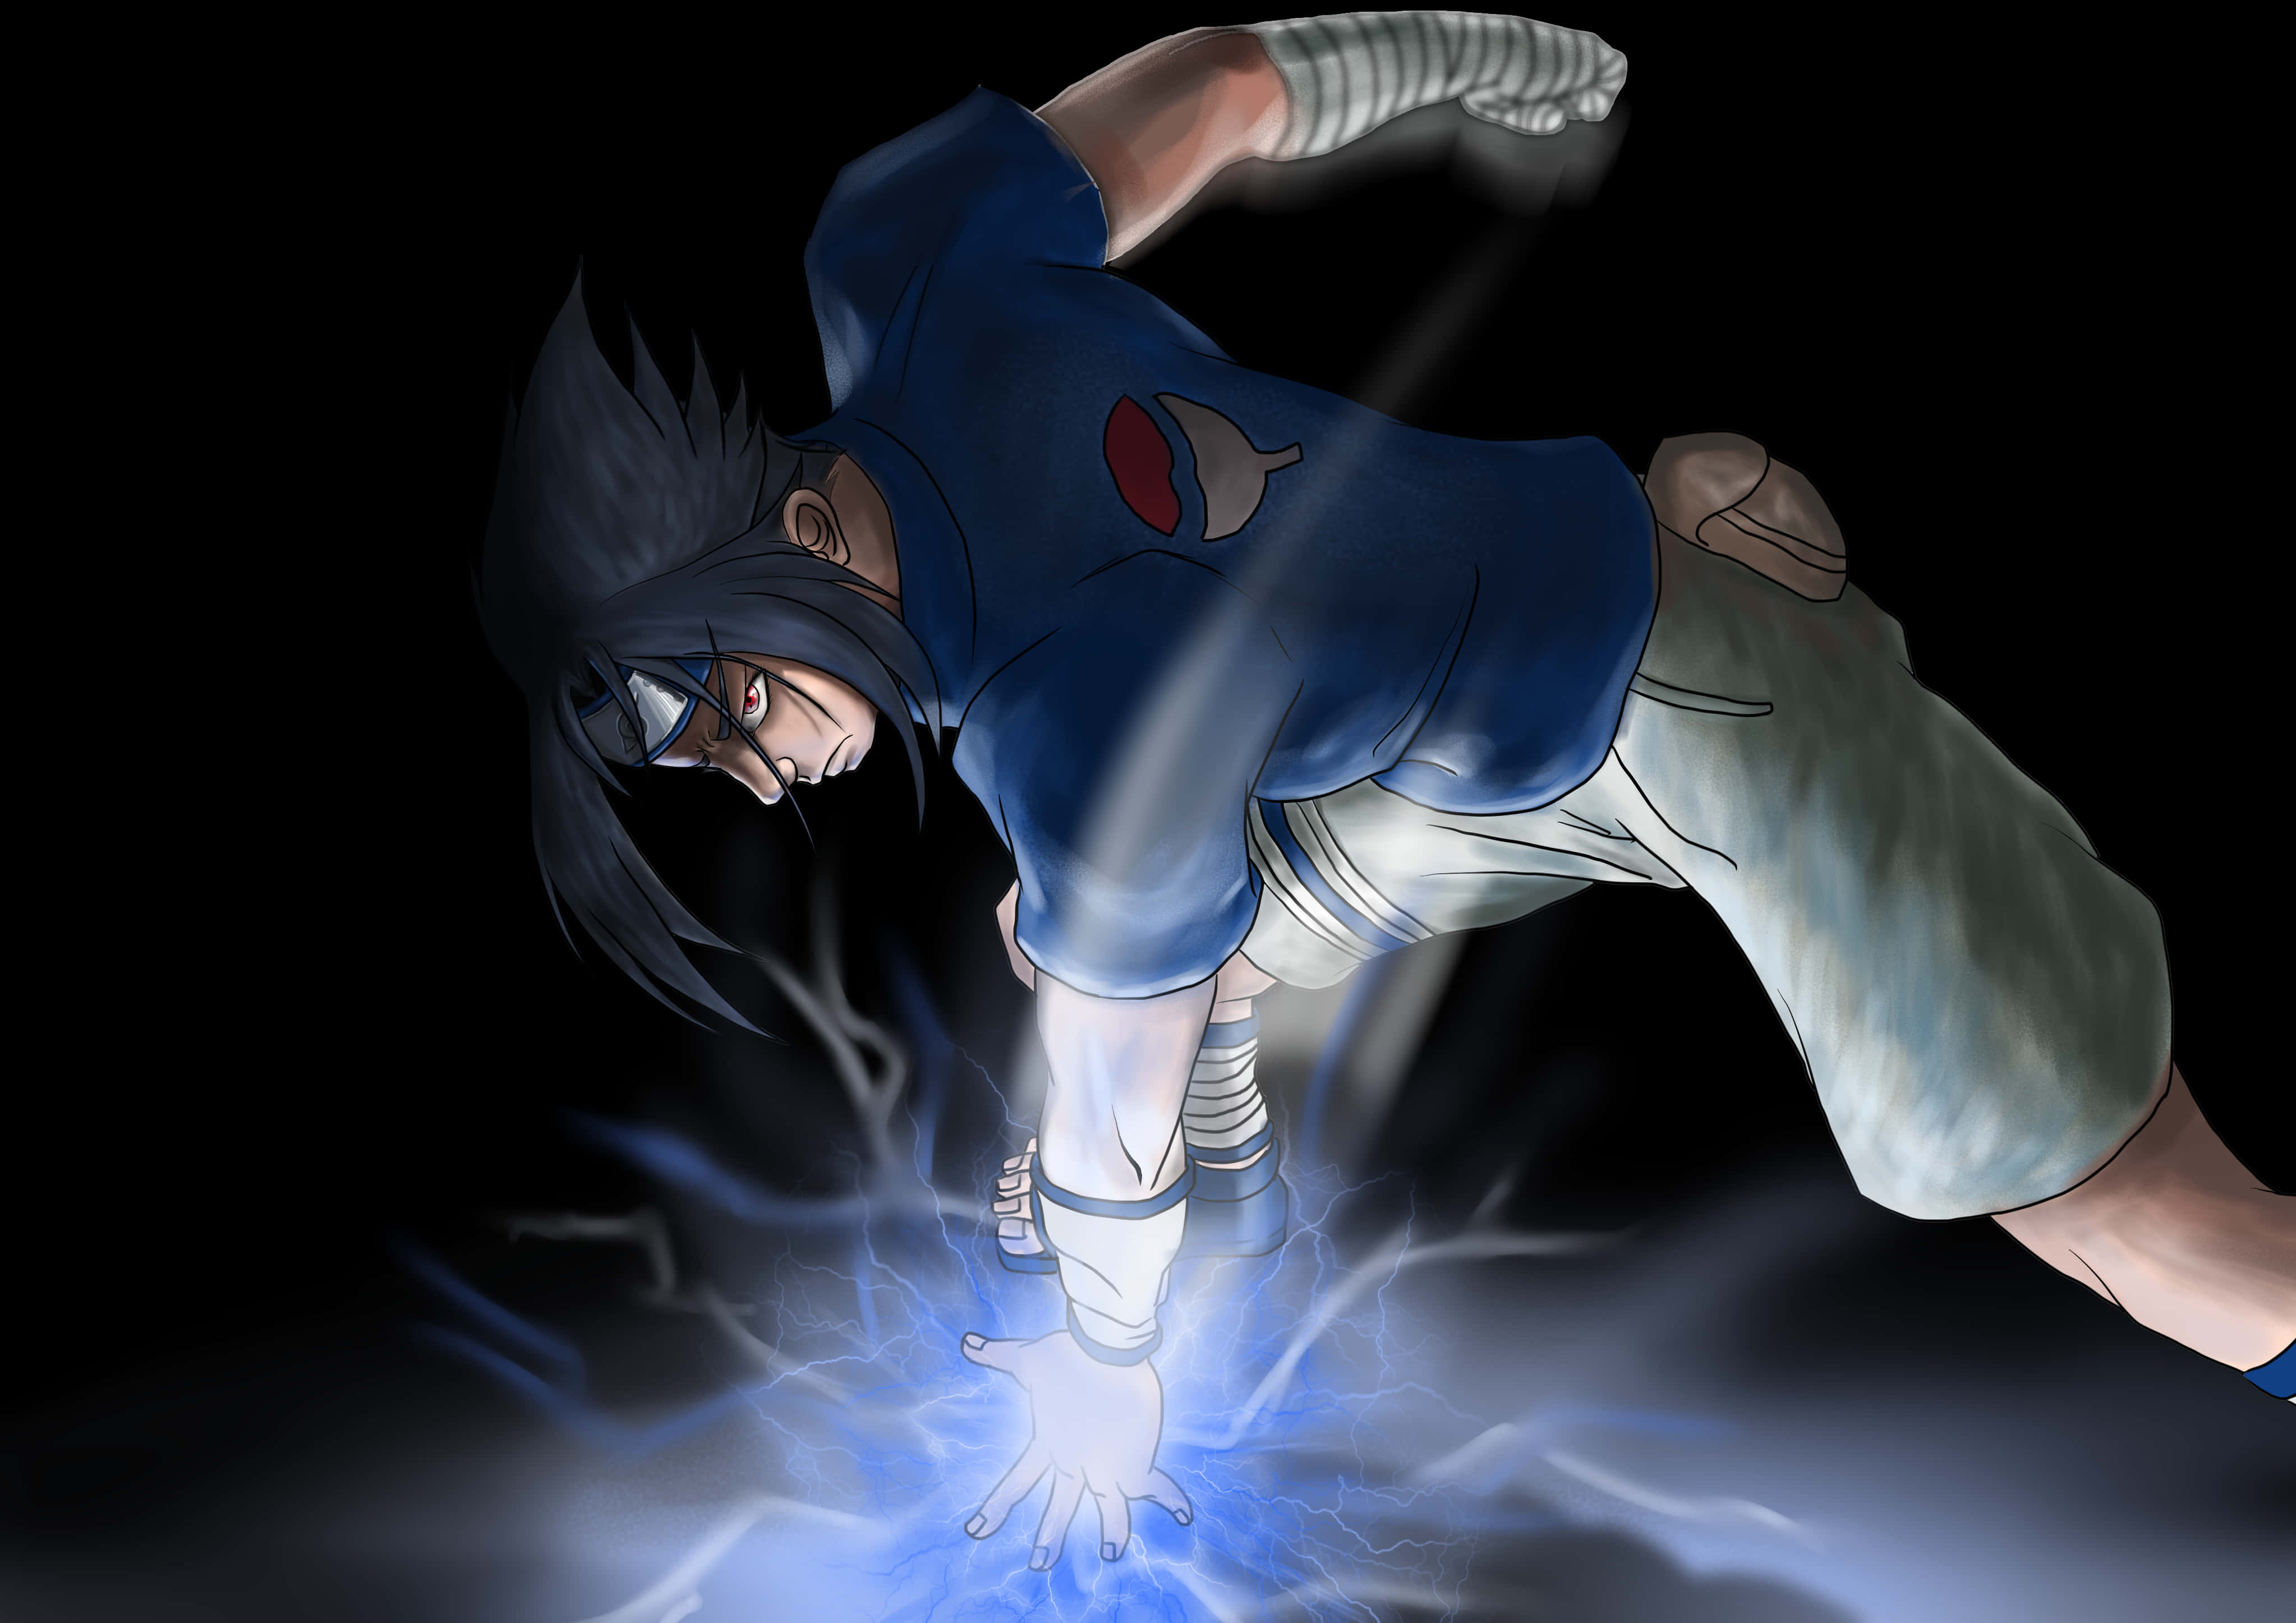 Intense: Blue Sasuke is ready for battle Wallpaper